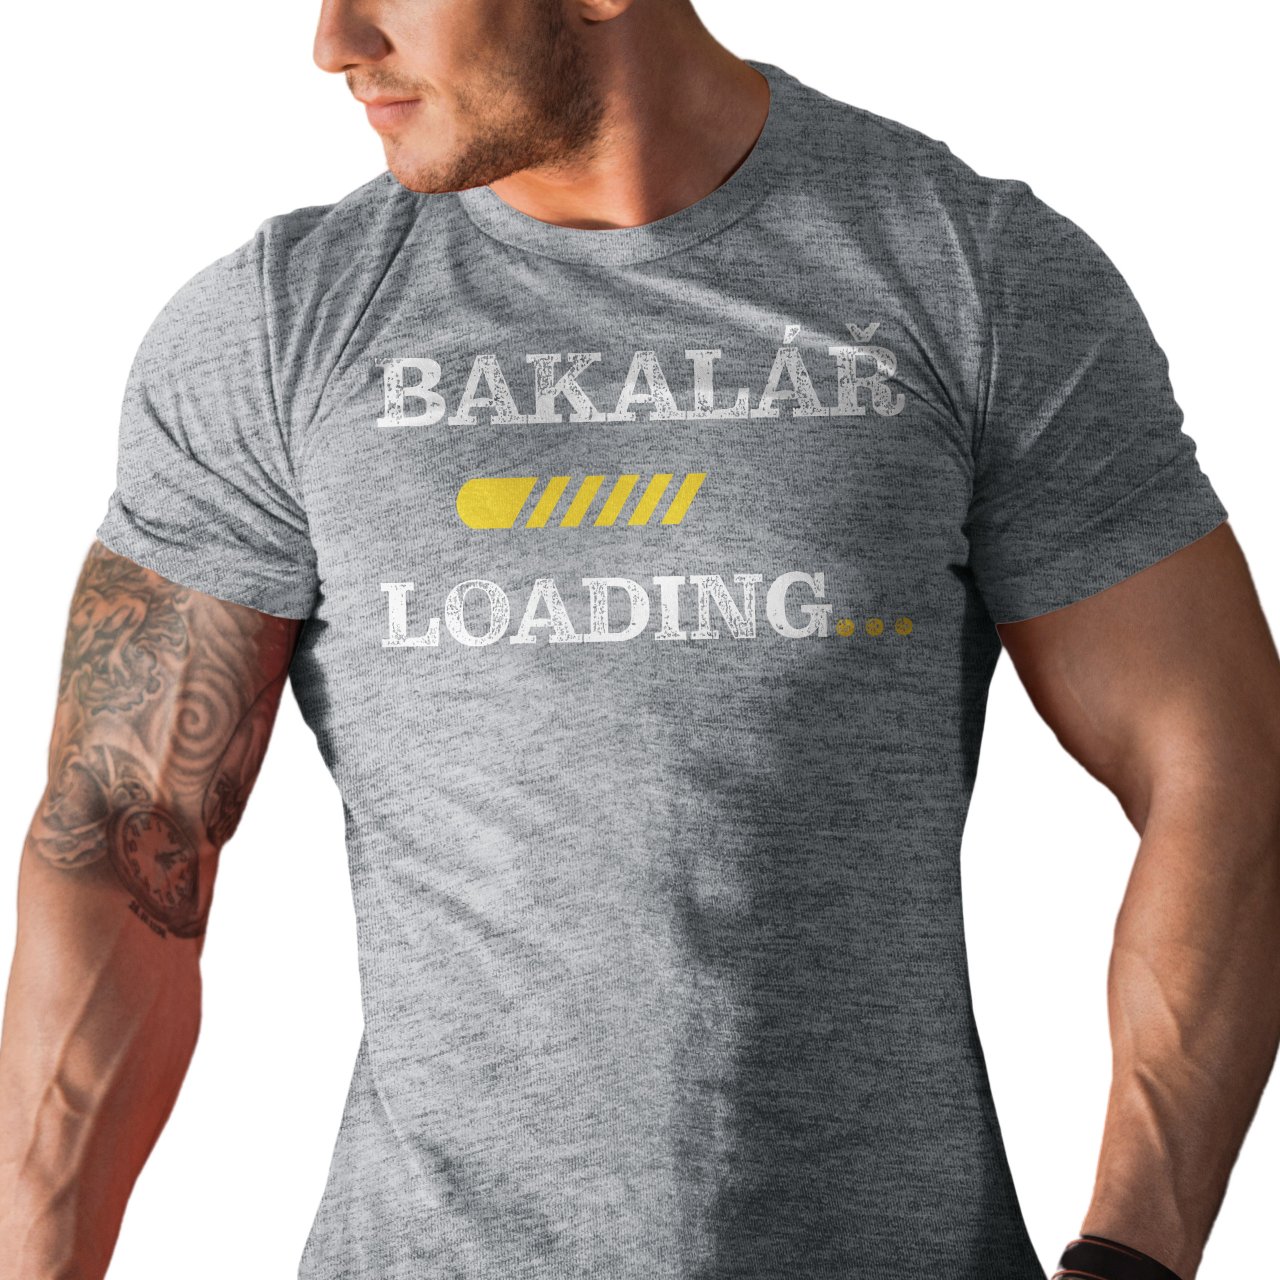 Pánské tričko s potiskem “Bakalář loading”